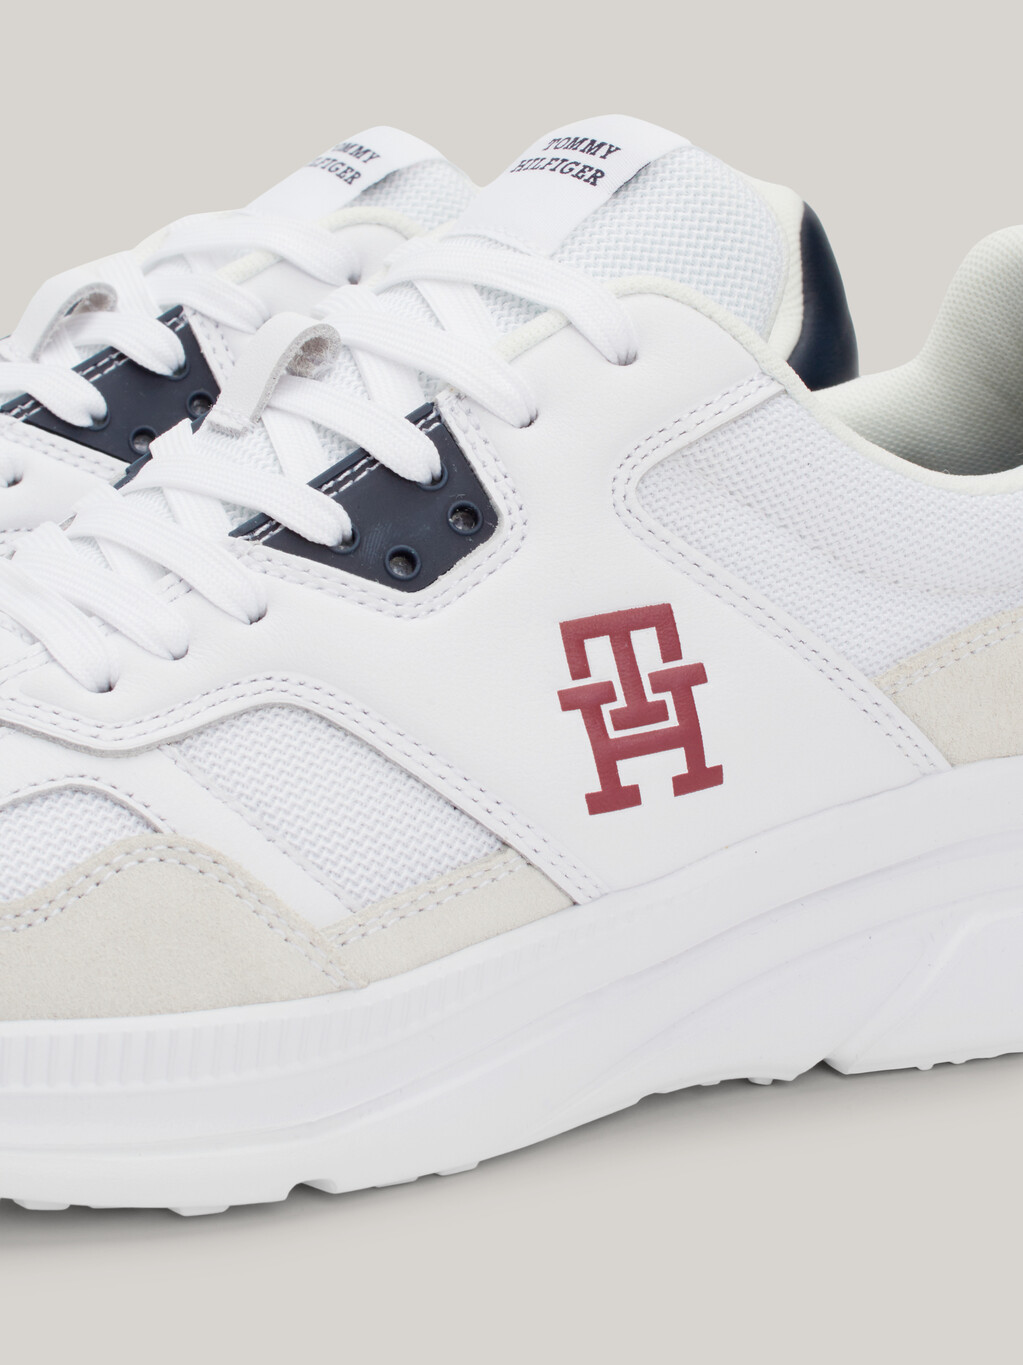 TH 現代混合紋理跑步運動鞋, White, hi-res